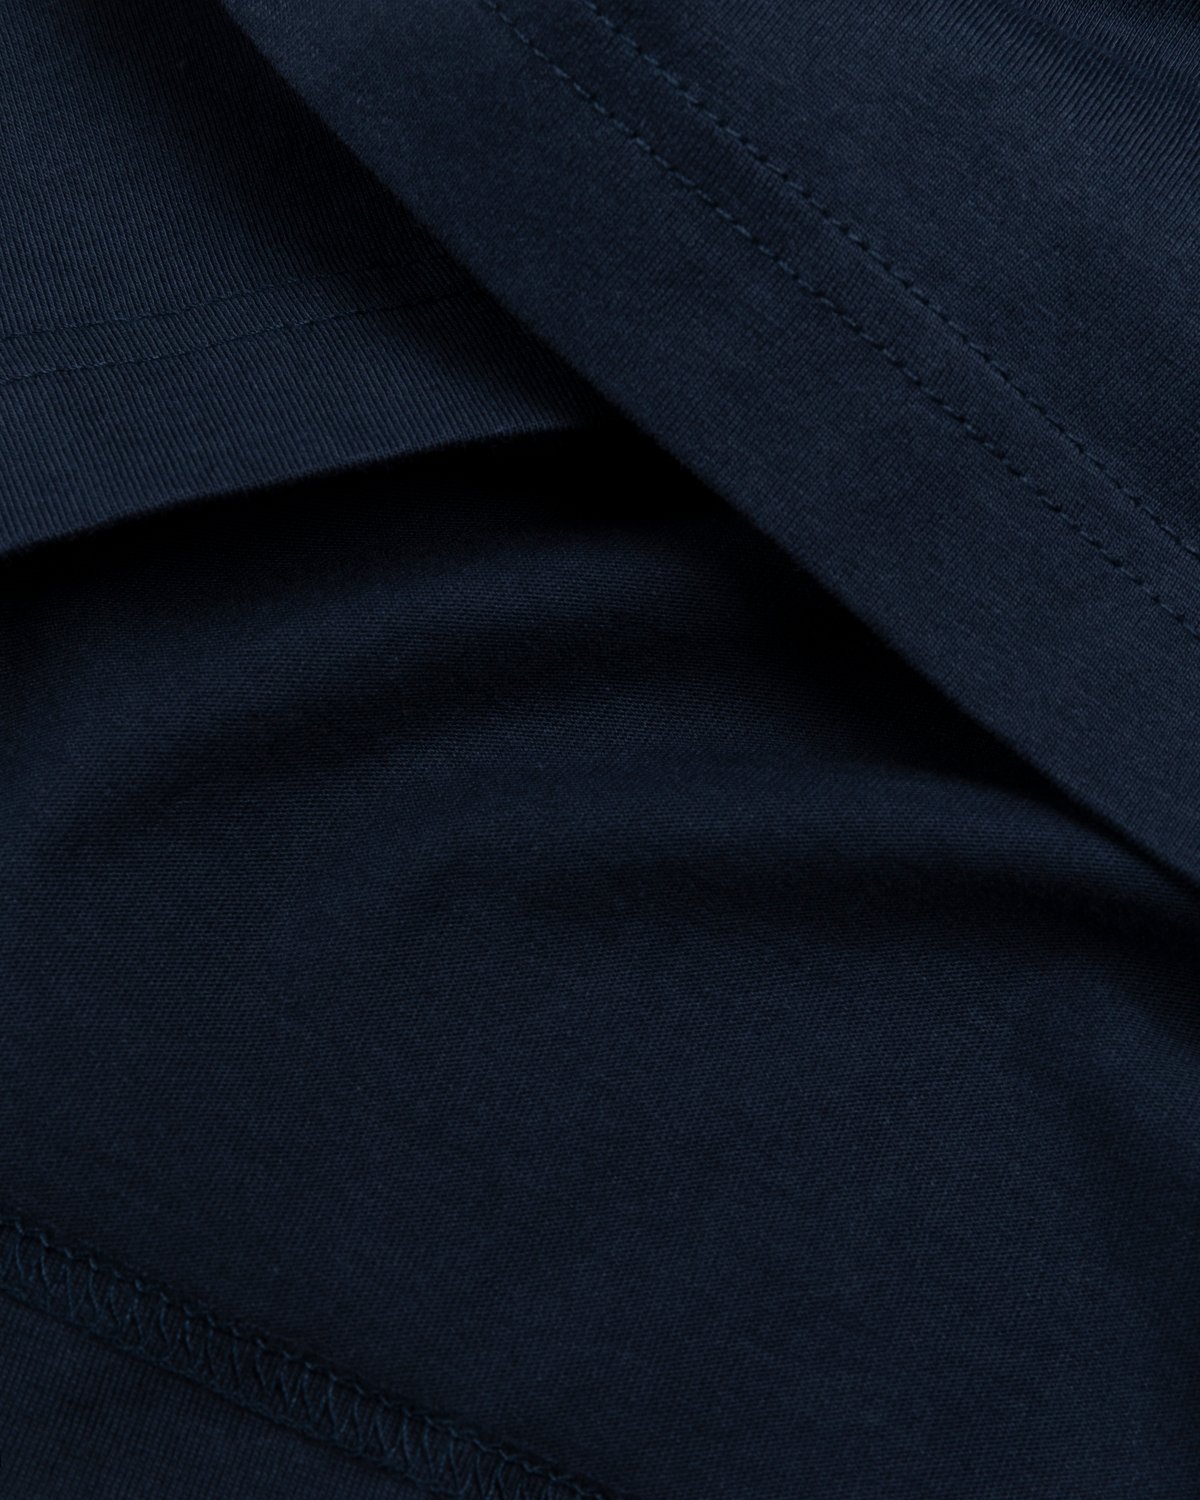 Marni - Logo T-Shirt Navy - Clothing - Blue - Image 4